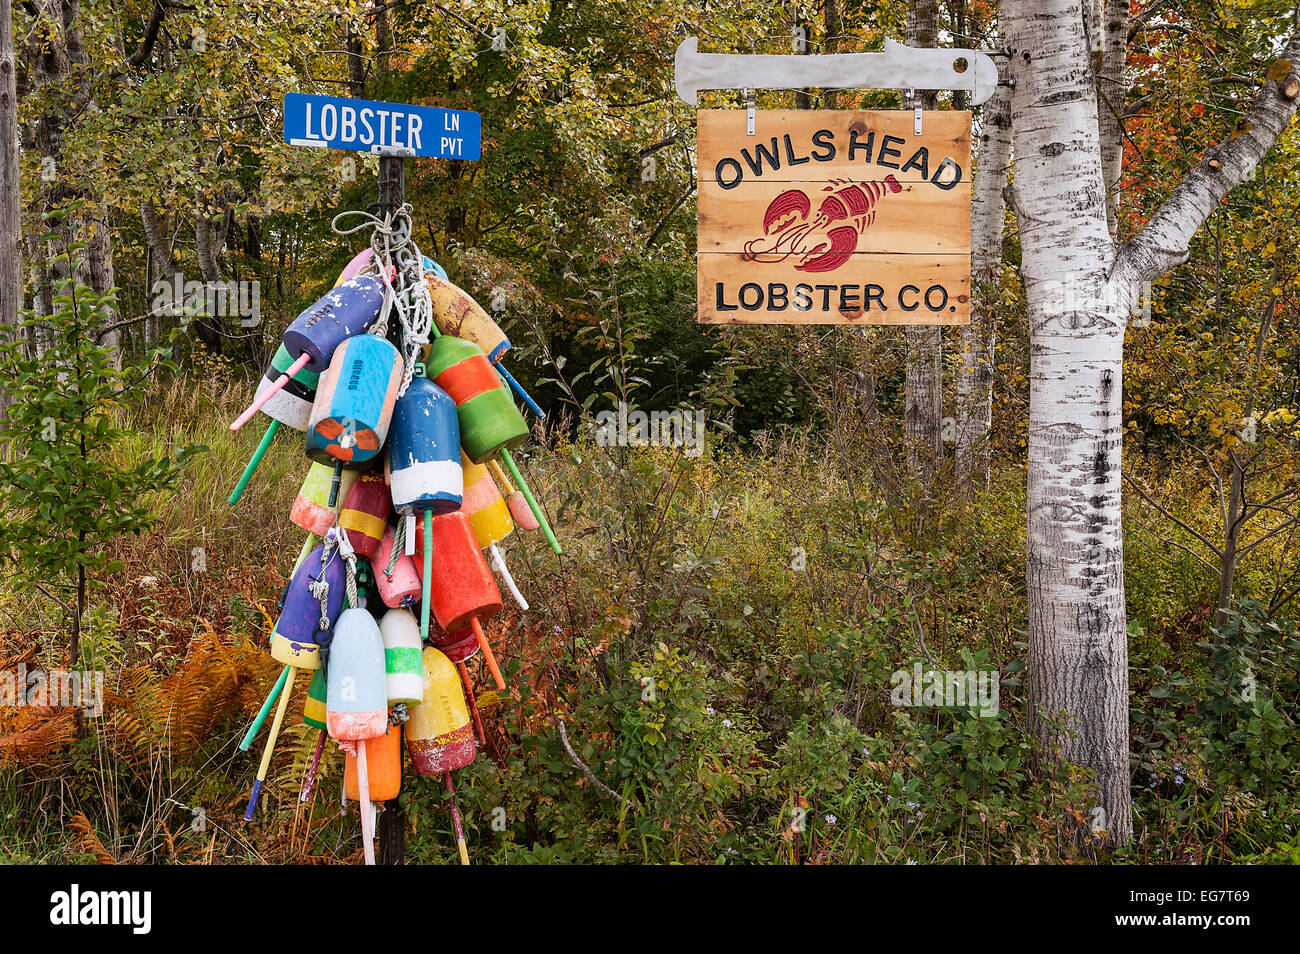 Les bouées de homard, Owls Head, Maine, USA. Banque D'Images